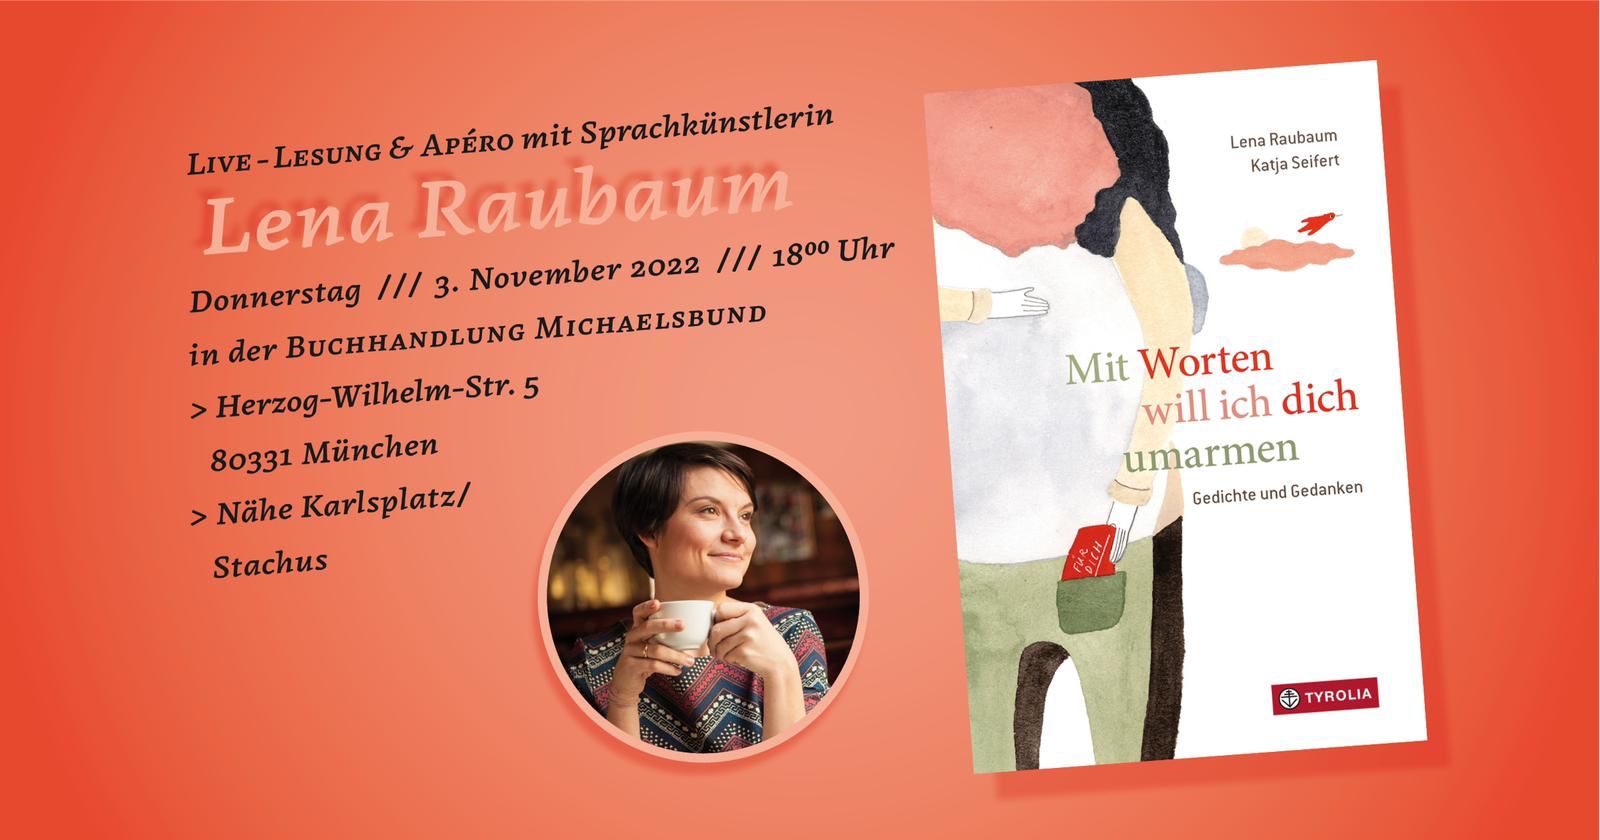 Live-Lesung mit Lena Raubaum (03.11.2022, München)